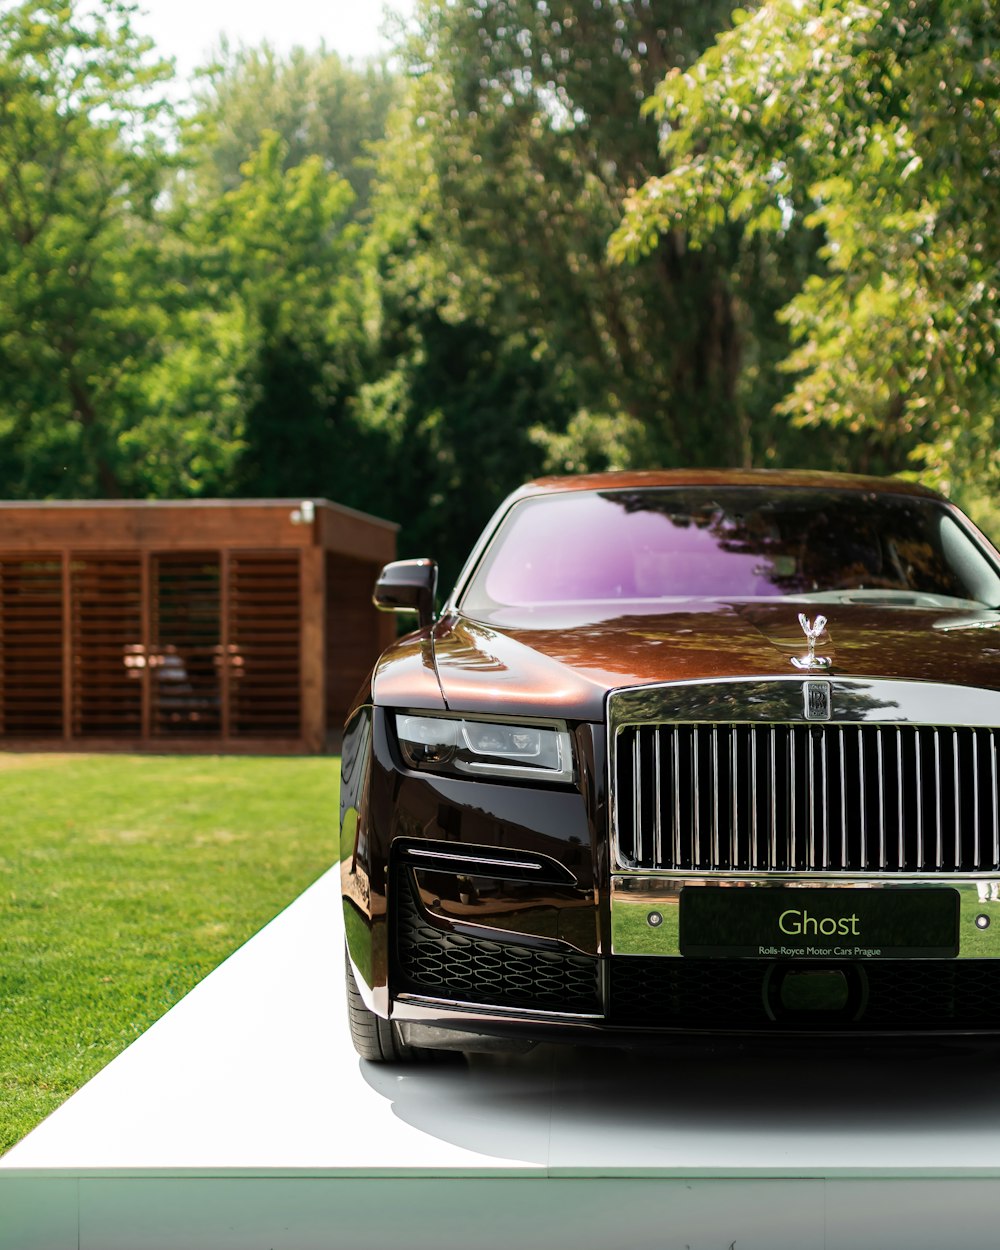 Rolls Royce là biểu tượng hoàng gia của sự sang trọng và đẳng cấp. Bạn đang có cơ hội tìm thấy bộ sưu tập hình ảnh miễn phí về những chiếc xe này tại địa chỉ đã cho. Hãy trải nghiệm và cảm nhận sự tinh tế của Rolls Royce qua những bức ảnh đẹp này. 